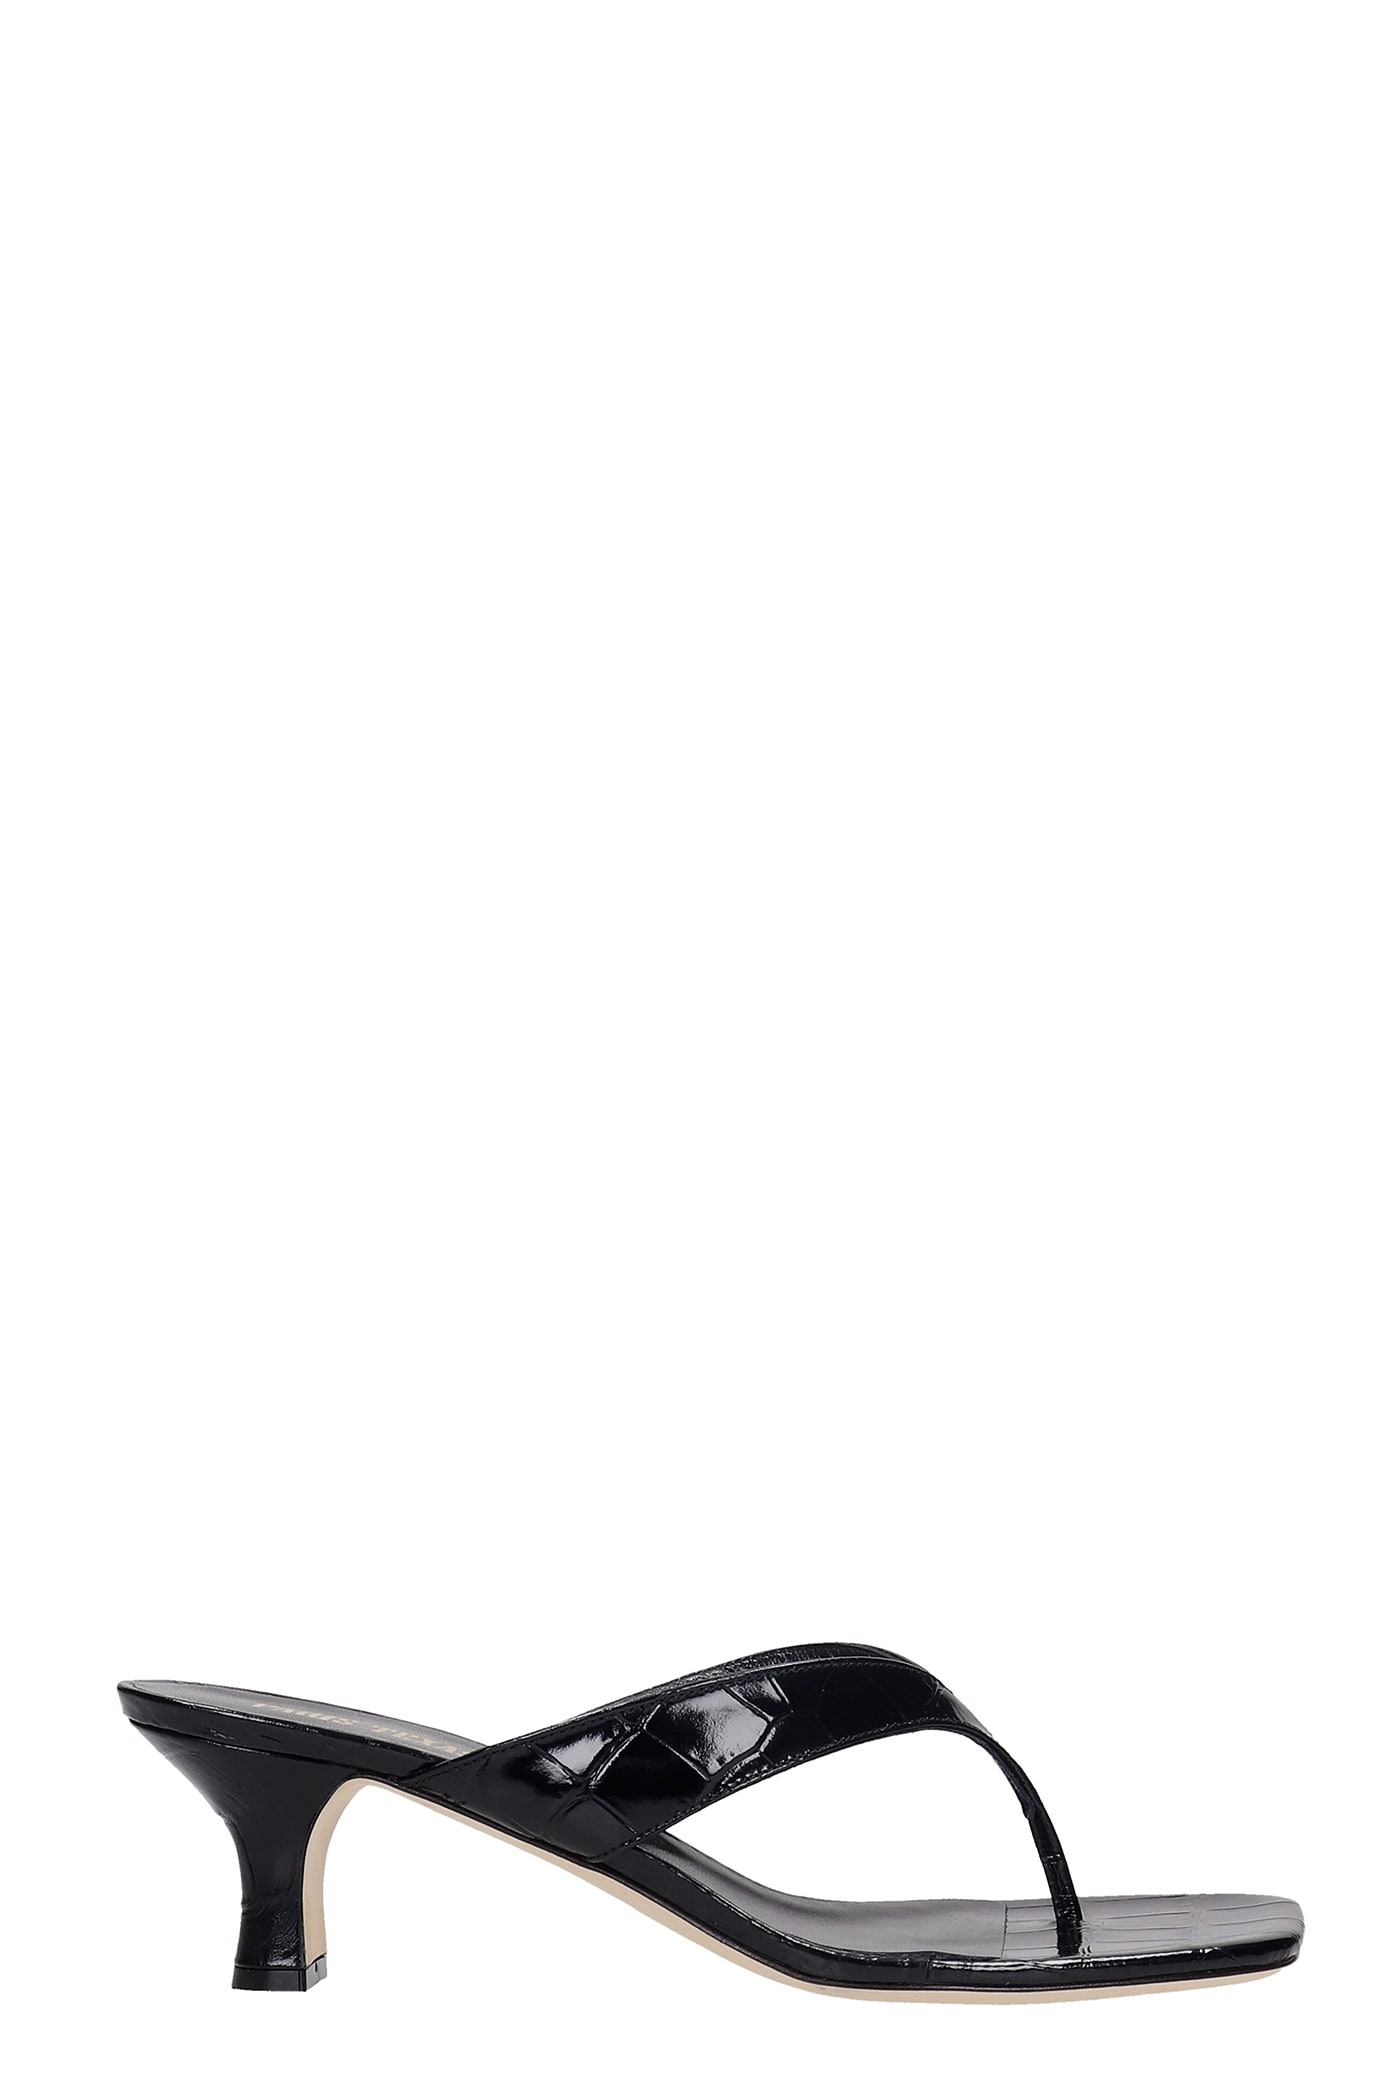 Paris Texas Portofino Sandals In Black Leather